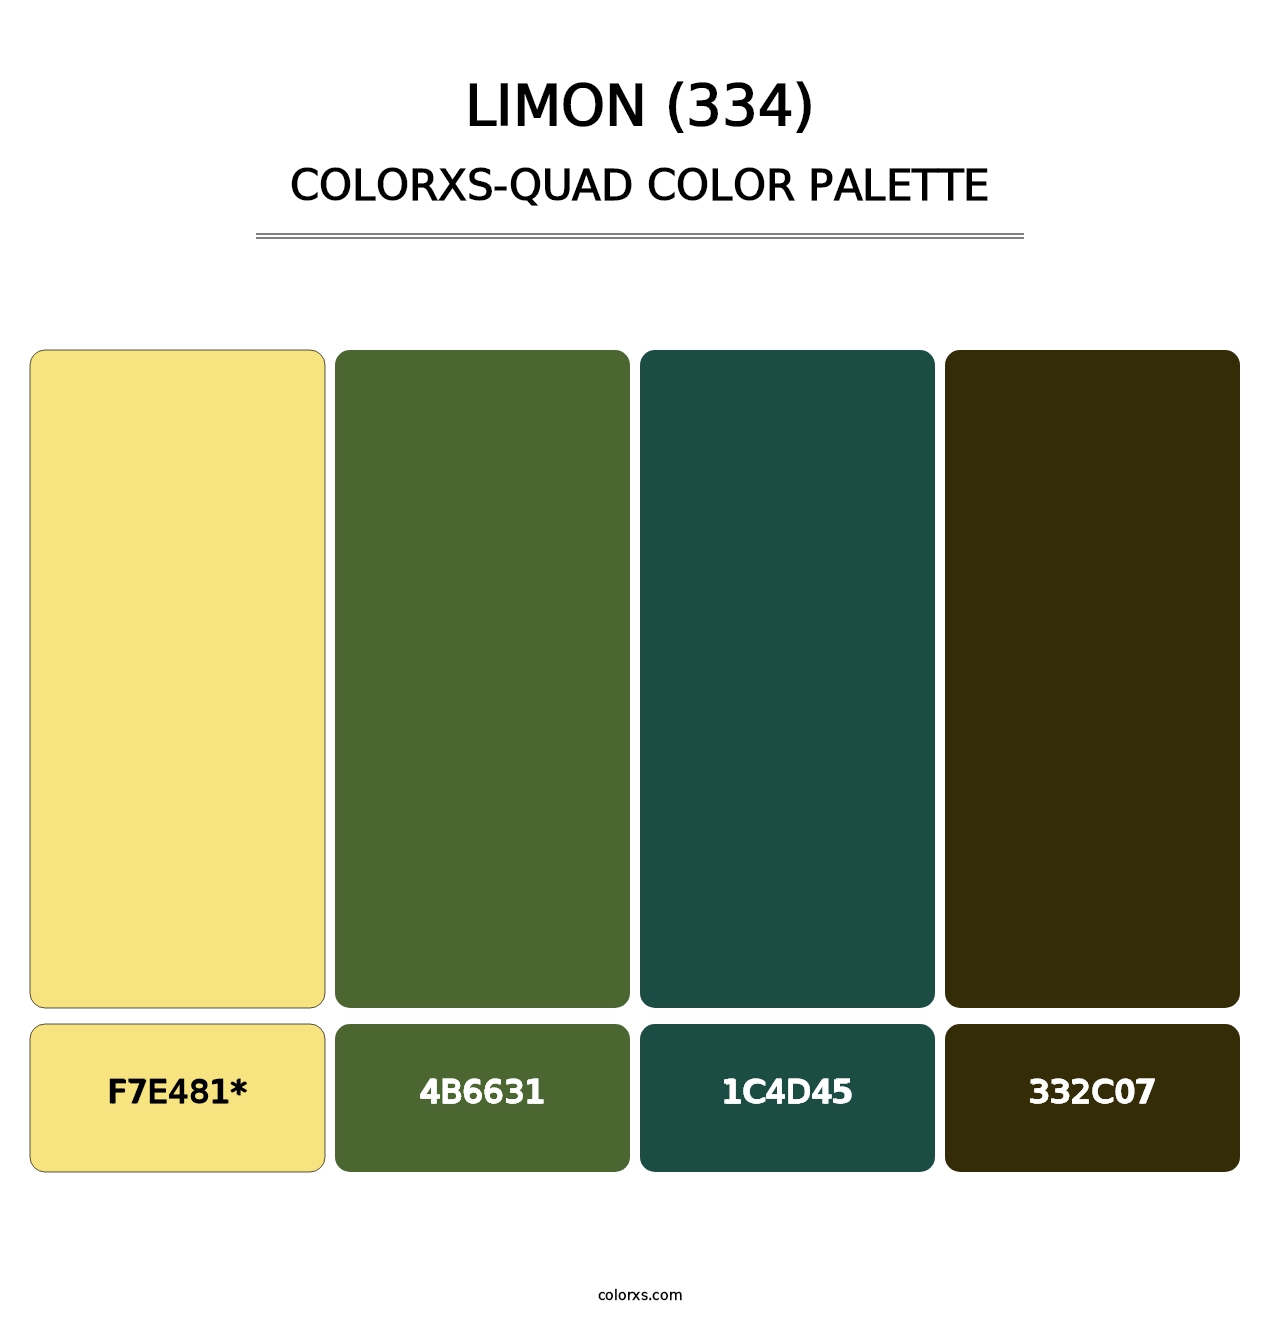 Limon (334) - Colorxs Quad Palette